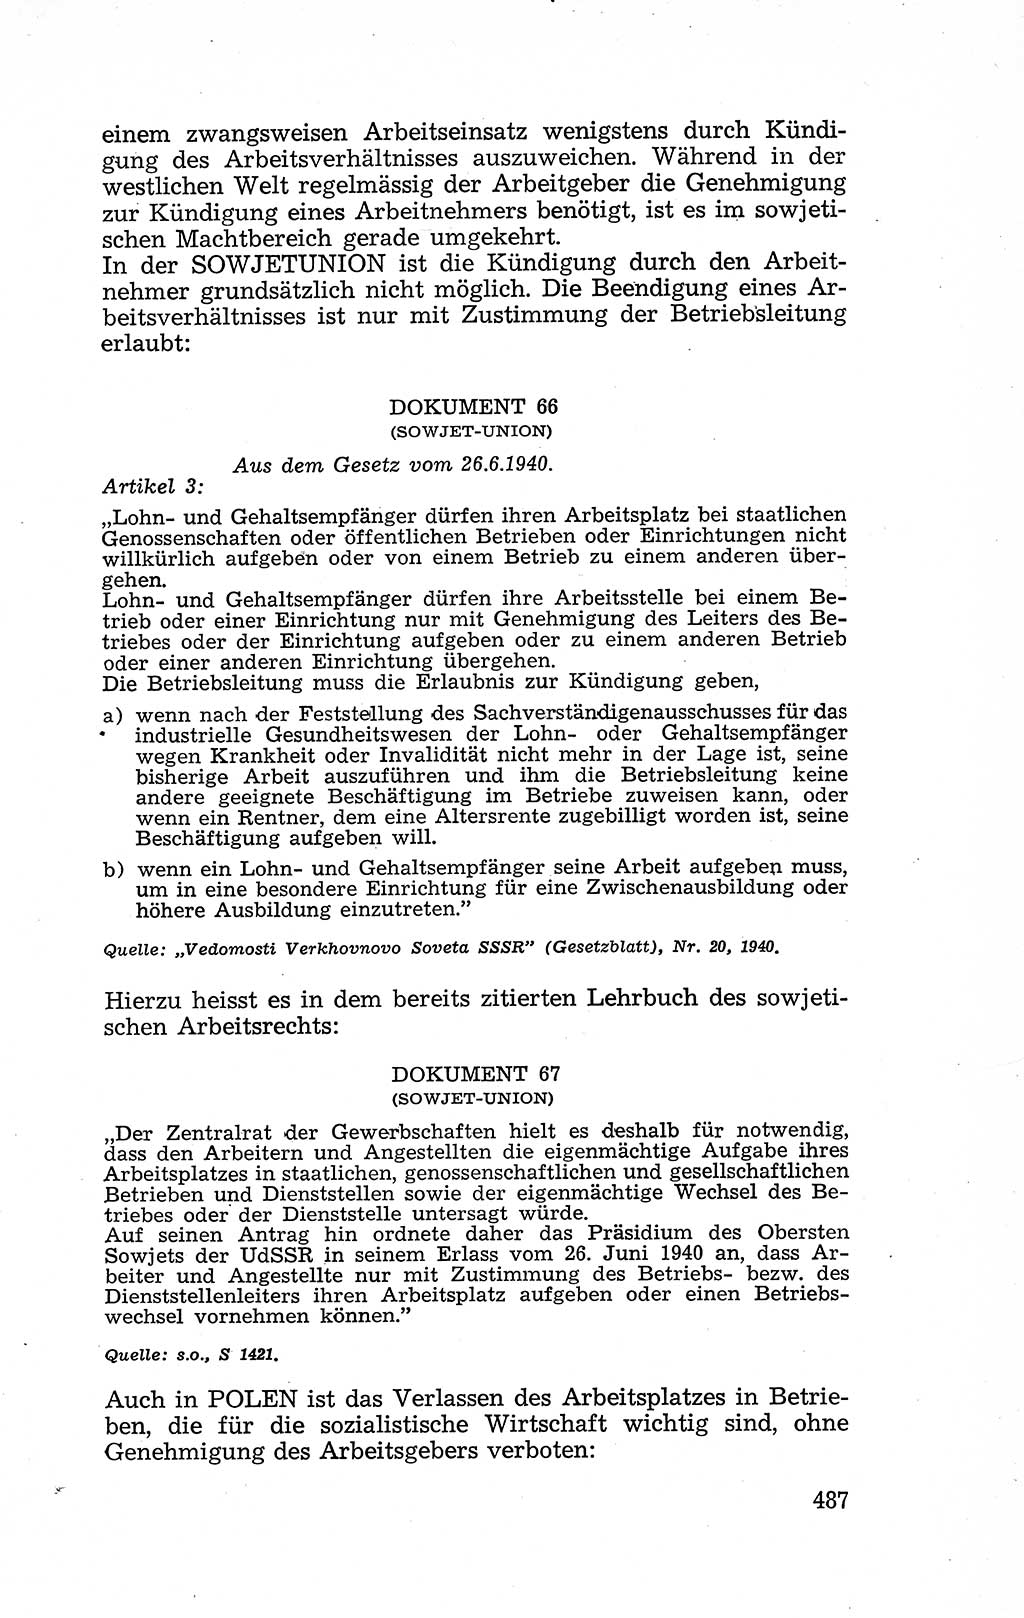 Recht in Fesseln, Dokumente, Internationale Juristen-Kommission [Bundesrepublik Deutschland (BRD)] 1955, Seite 487 (R. Dok. IJK BRD 1955, S. 487)